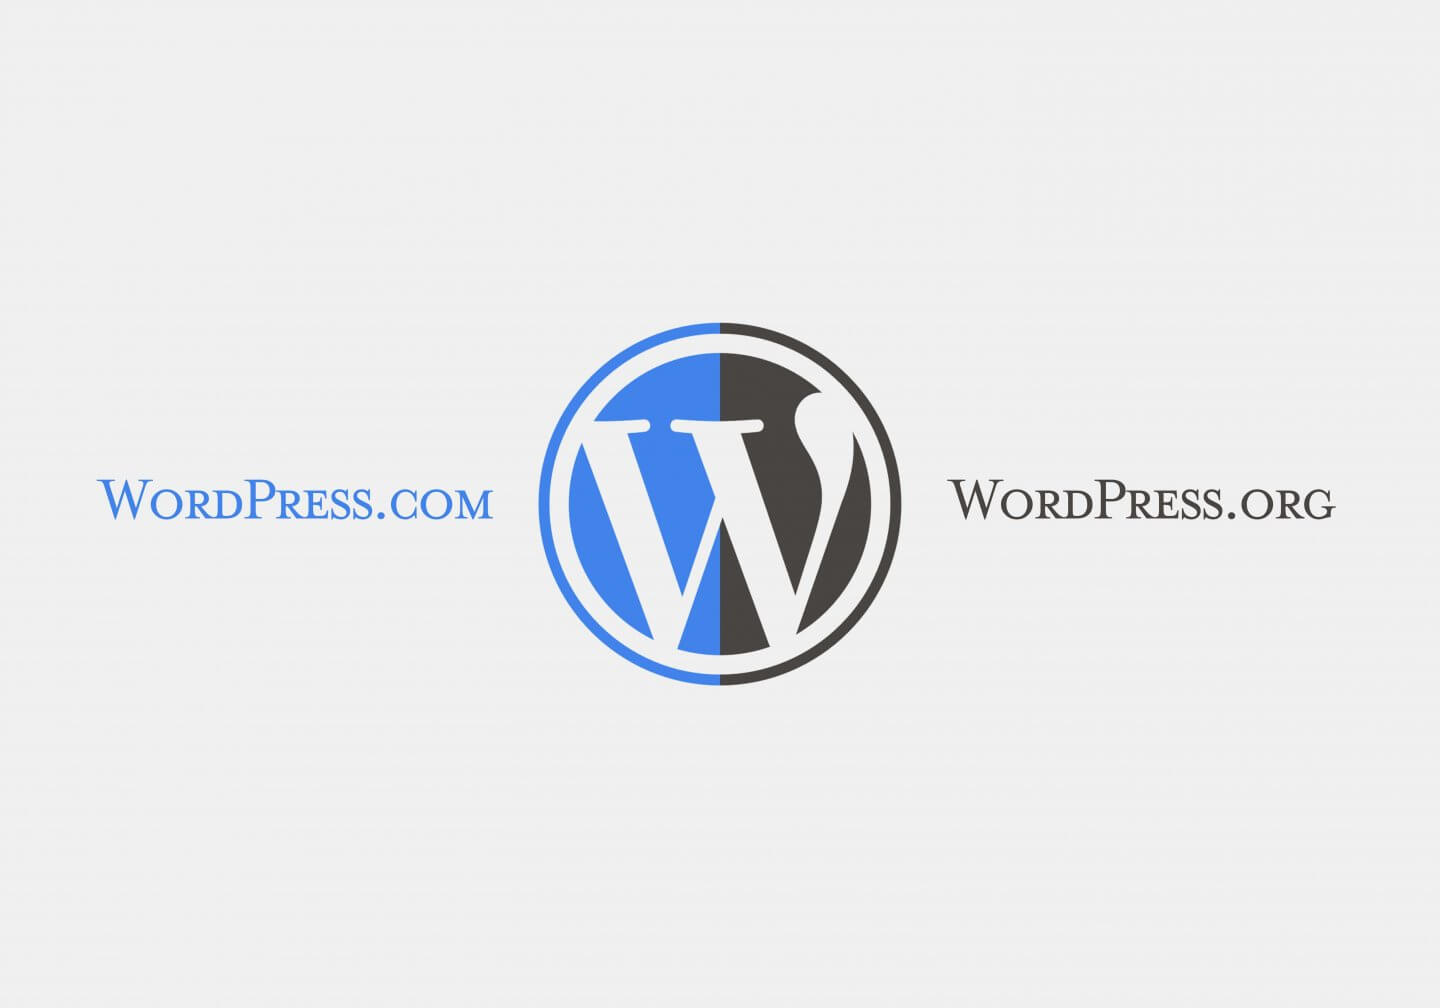 Uitgelicht: het verschil tussen WordPress.com en WordPress.org